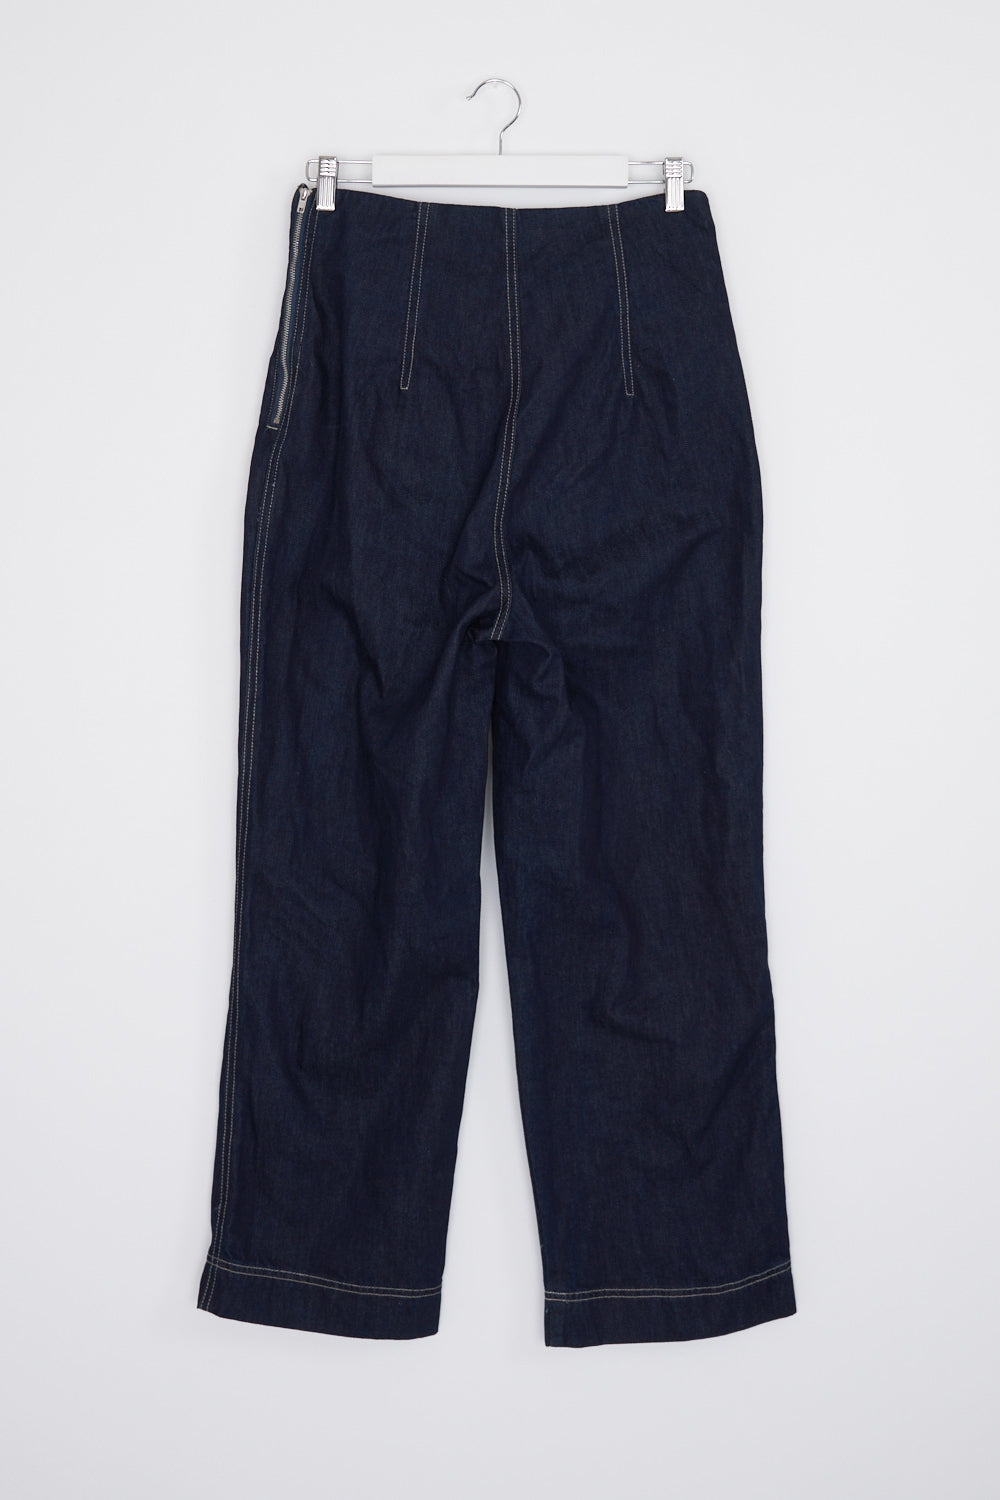 Current Air Dark Blue Denim Contrast Stitch Tie Front Jeans M